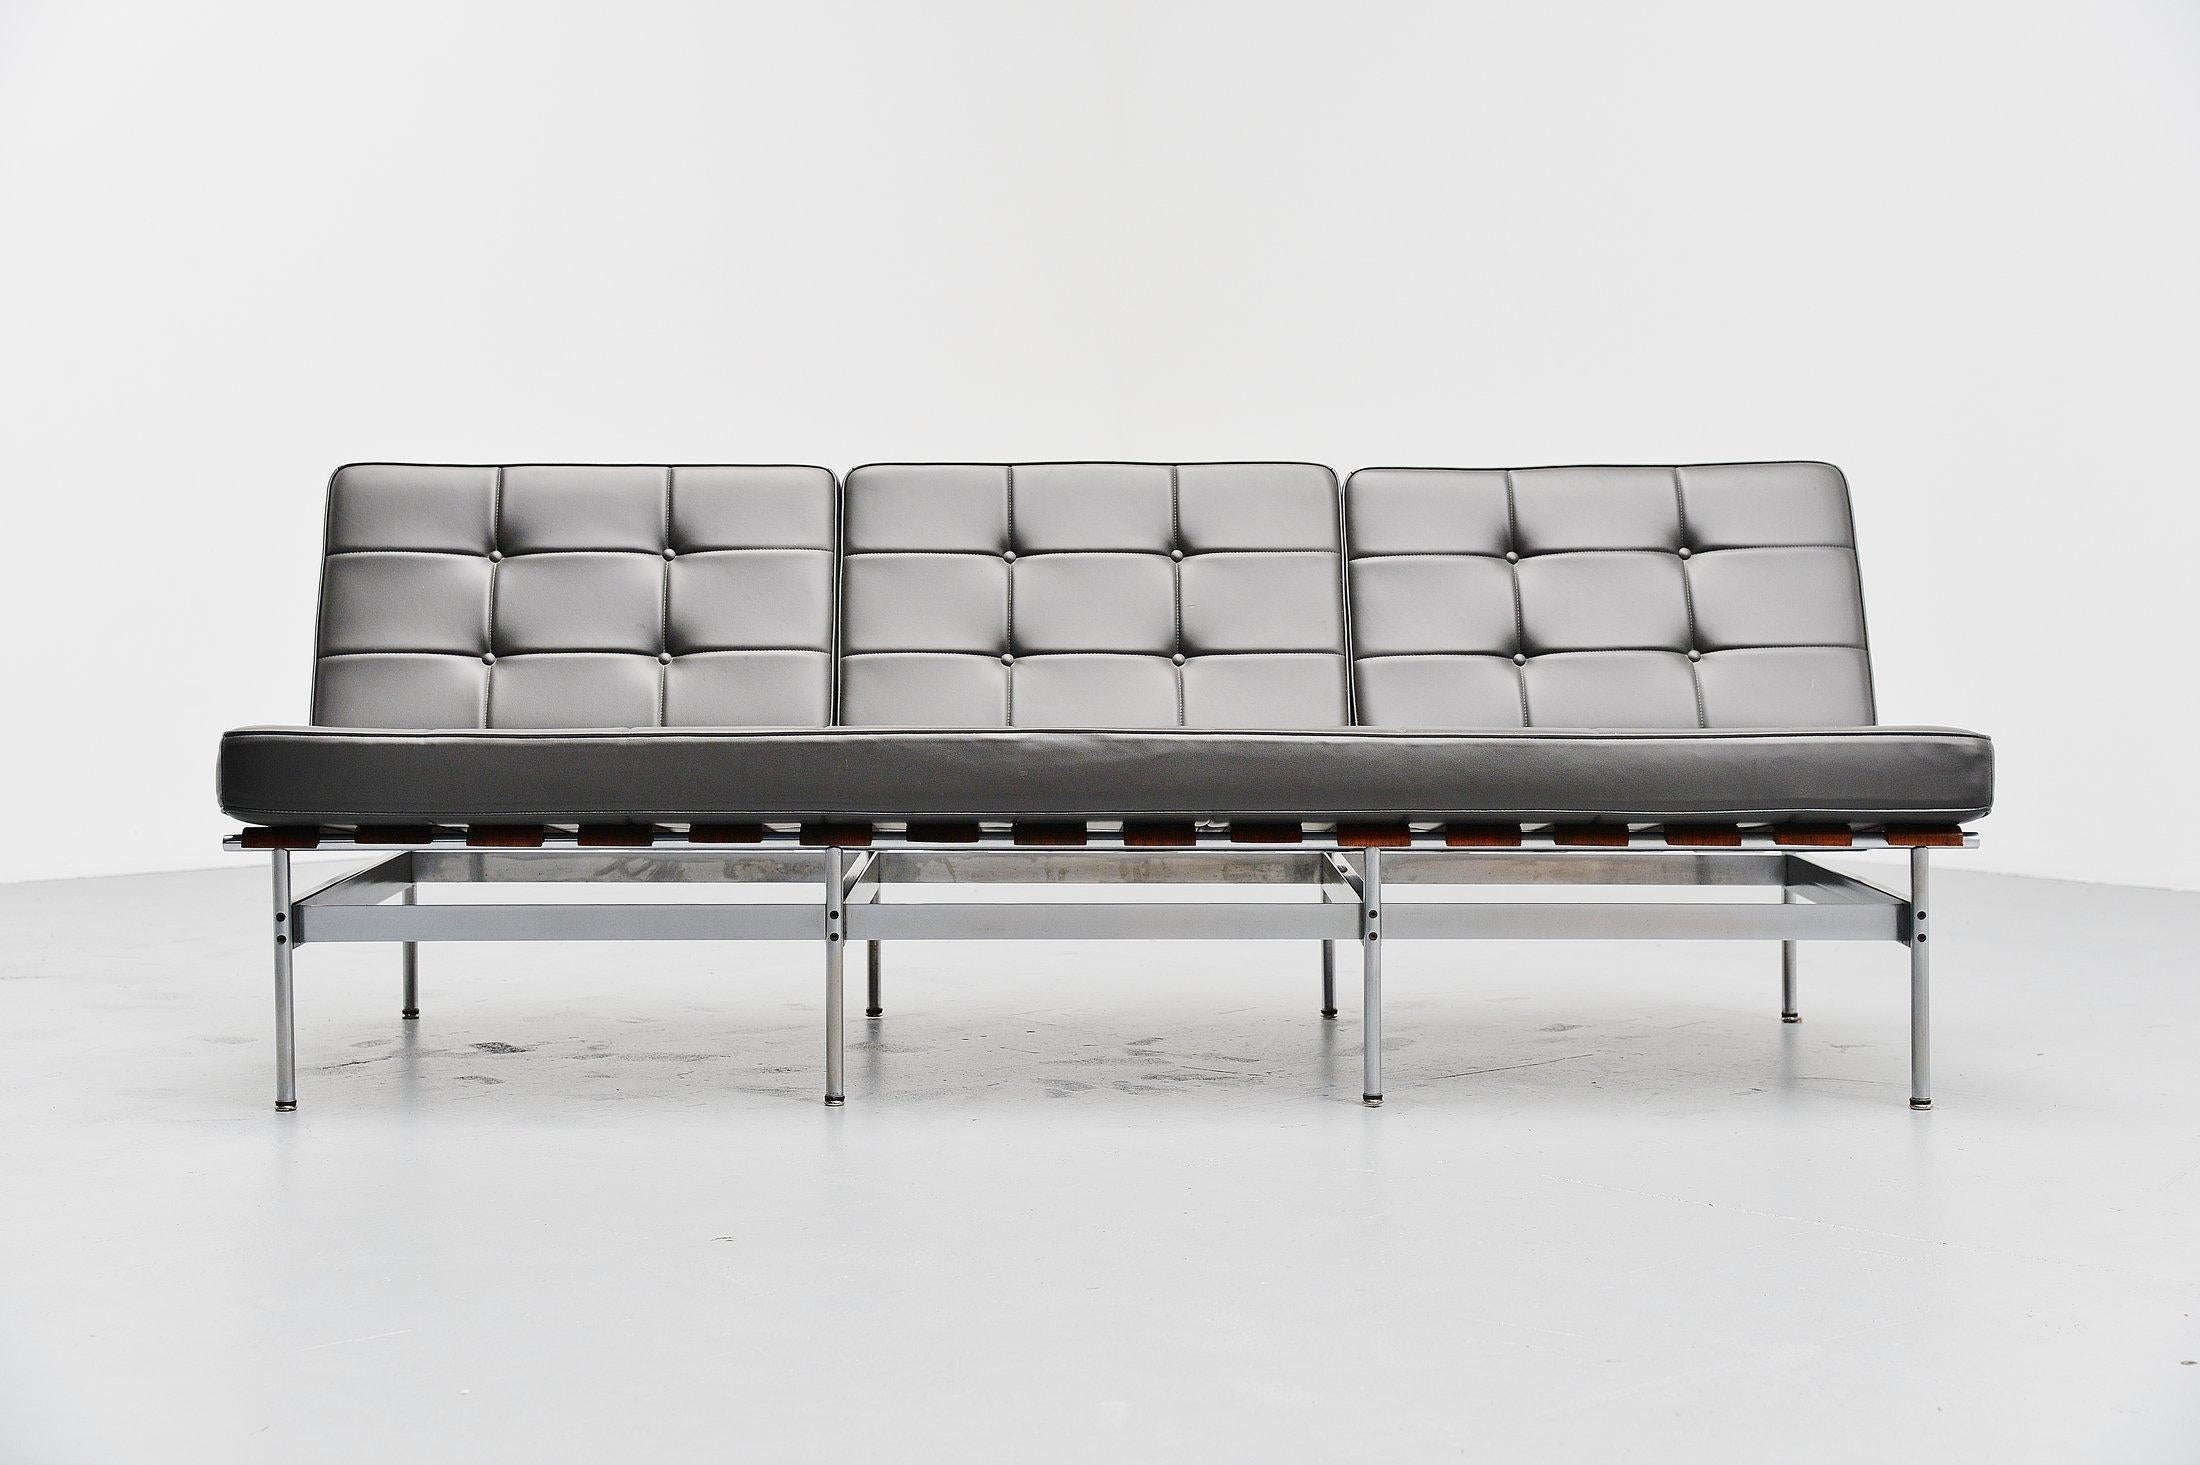 Äußerst seltenes und originales 3-Sitzer-Sofa Modell 416/3, entworfen vom niederländischen Designer Kho Liang Ie für Artifort, Holland 1959. Dieses Sofa war einer der schönsten Entwürfe von Kho Liang Ie für Artifort und aufgrund des Materialmixes